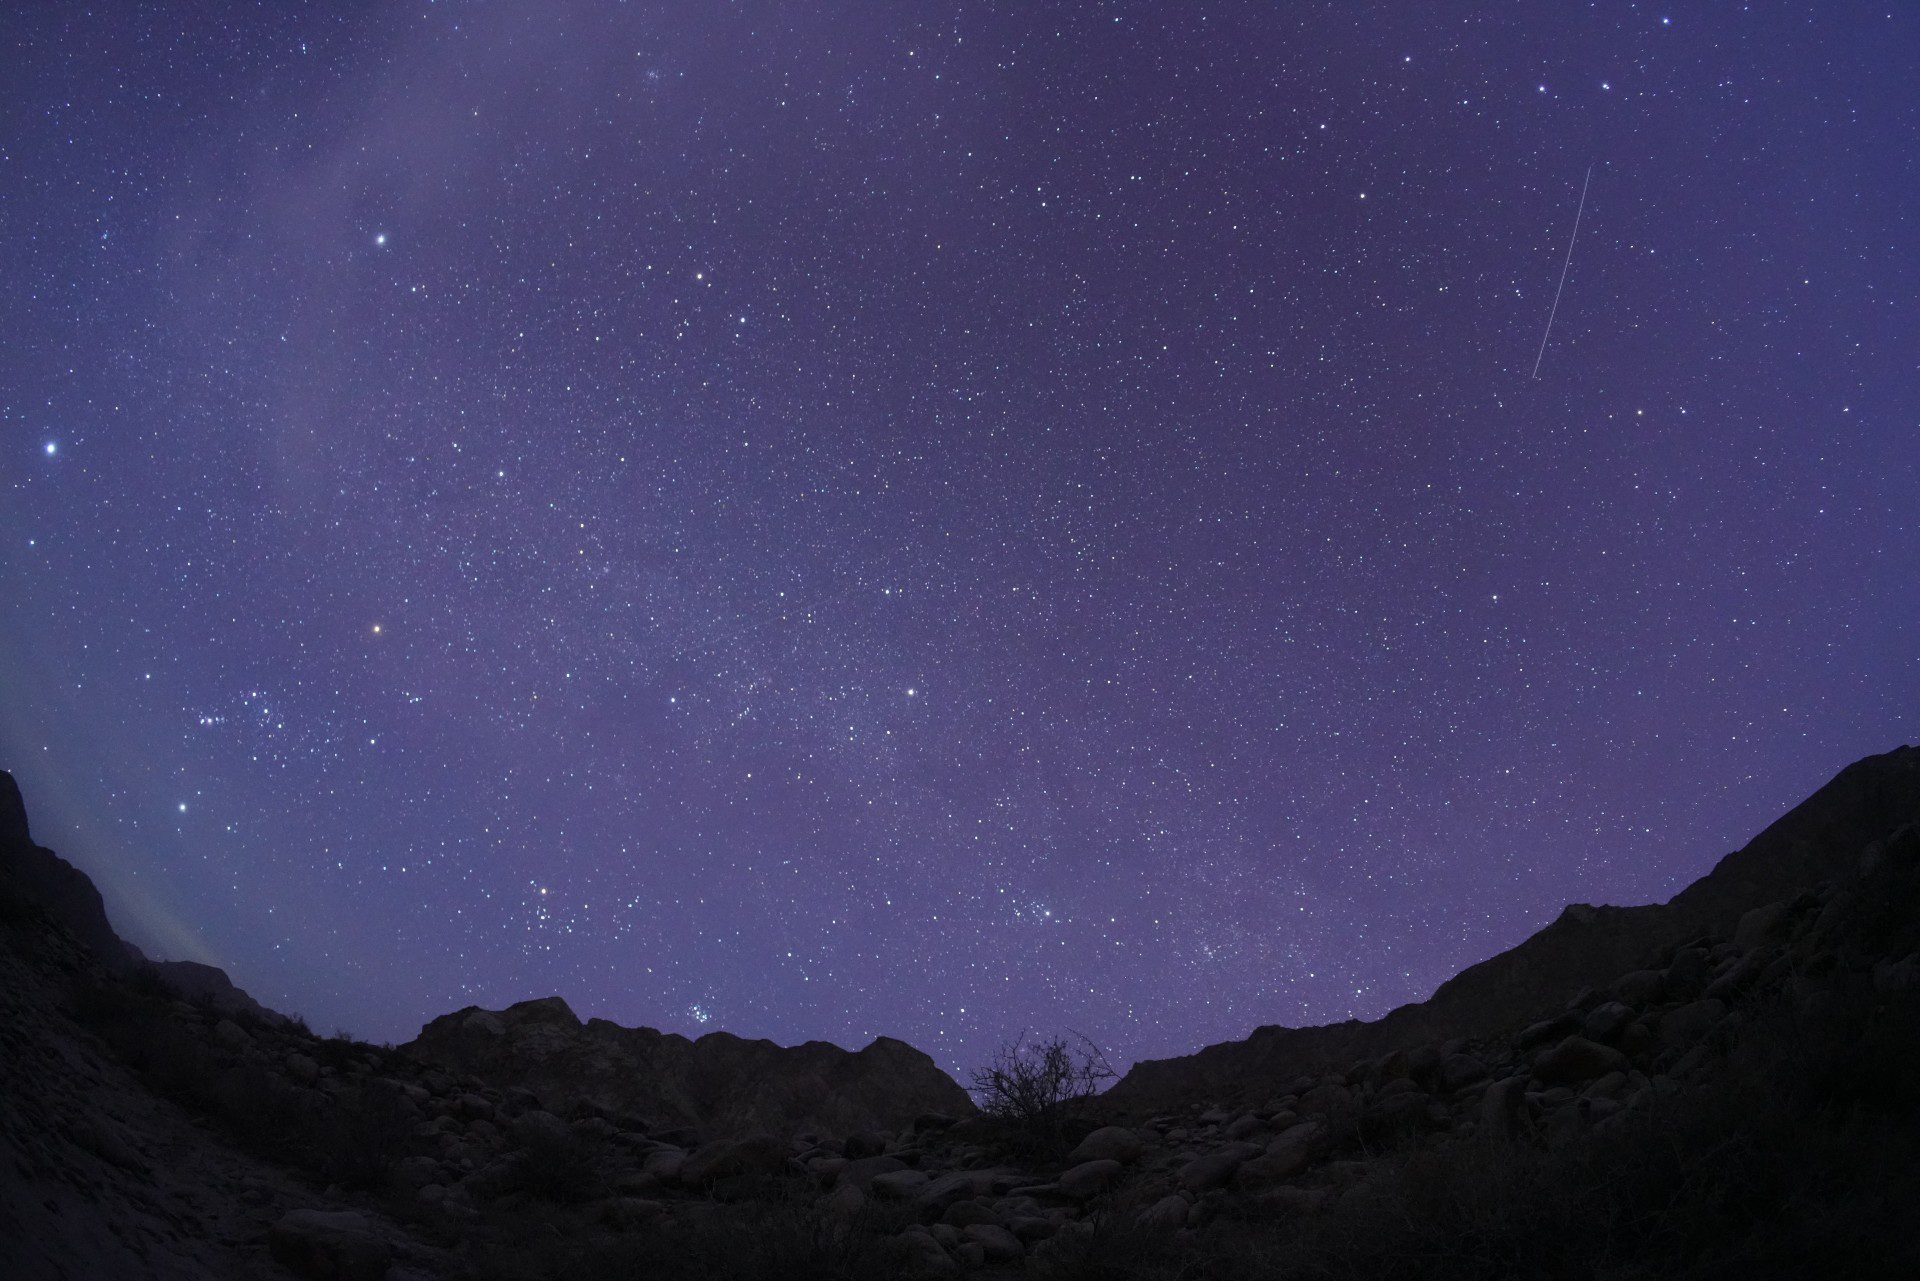 Een meteoor schiet door een sterrenhemel boven bergen